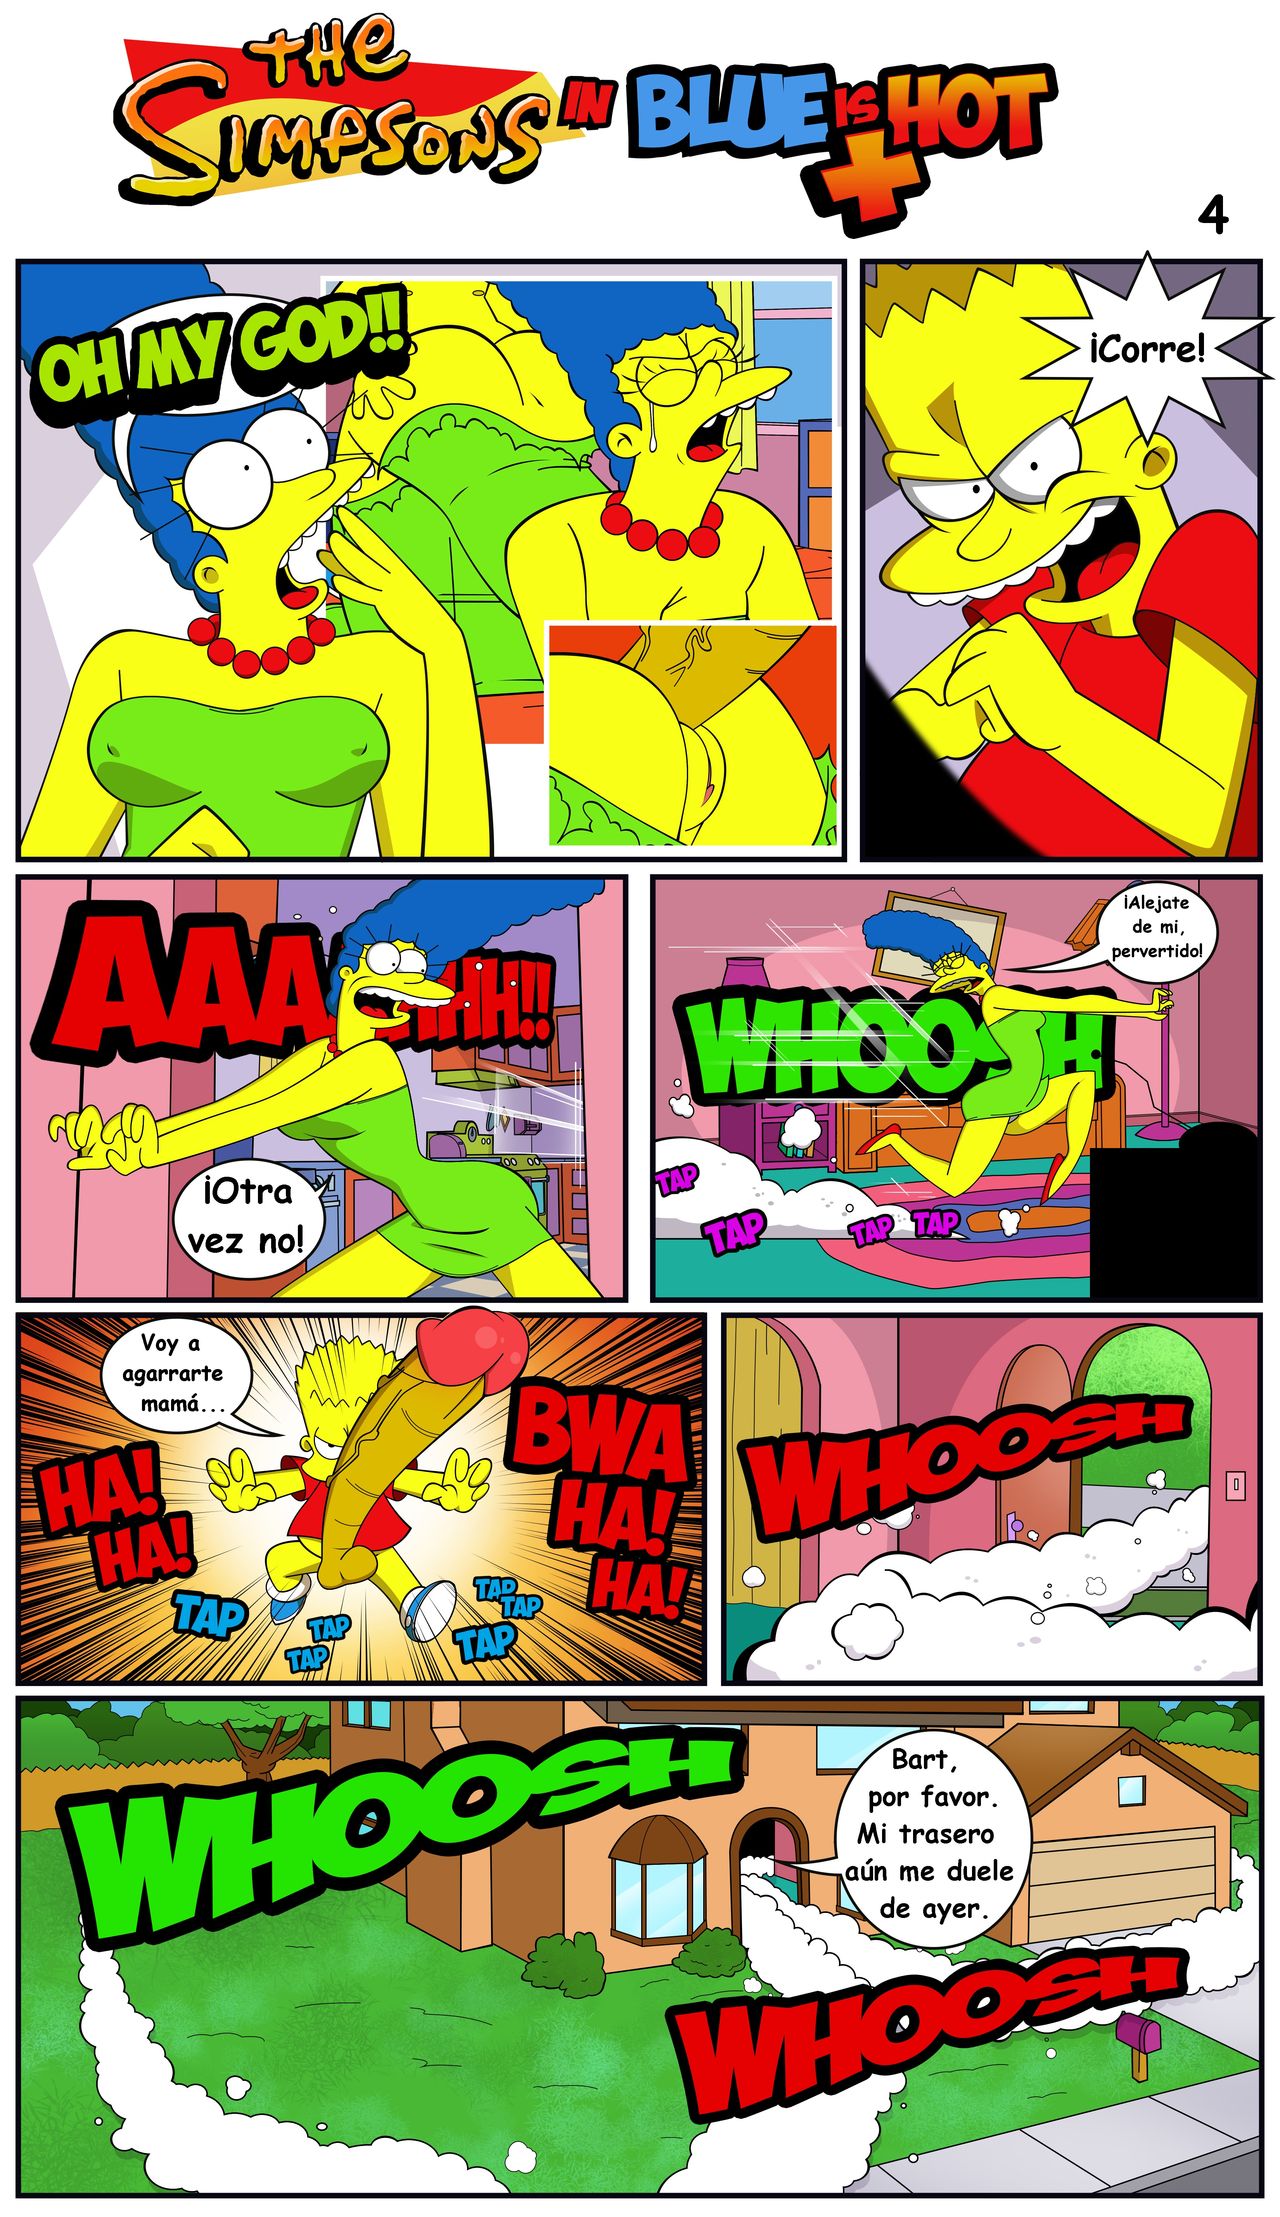 Simpsons xxx - El azul es mas caliente - Page 5 - HentaiEra